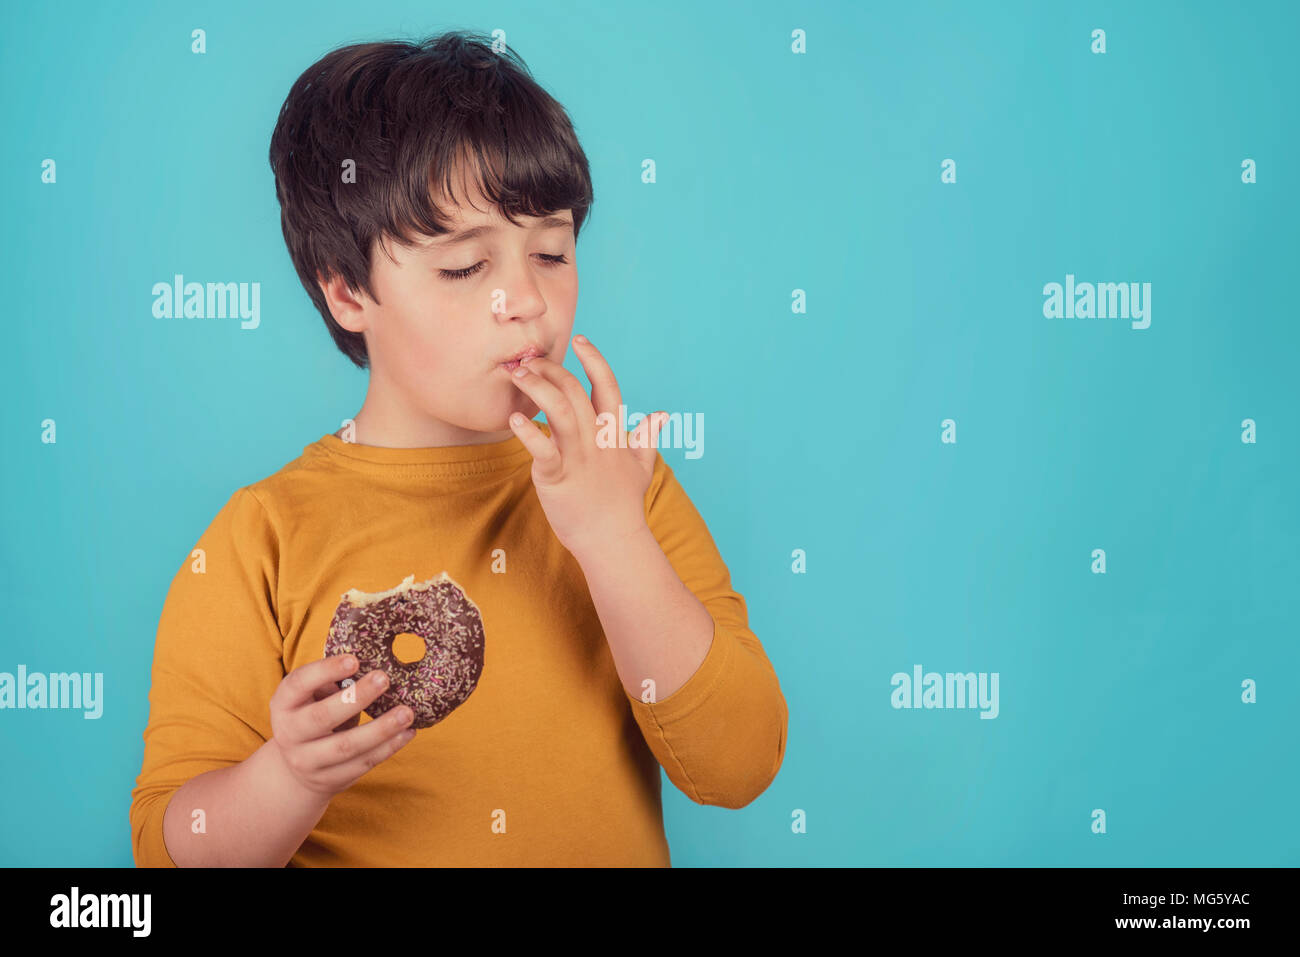 boy eating donut on blue background Stock Photo